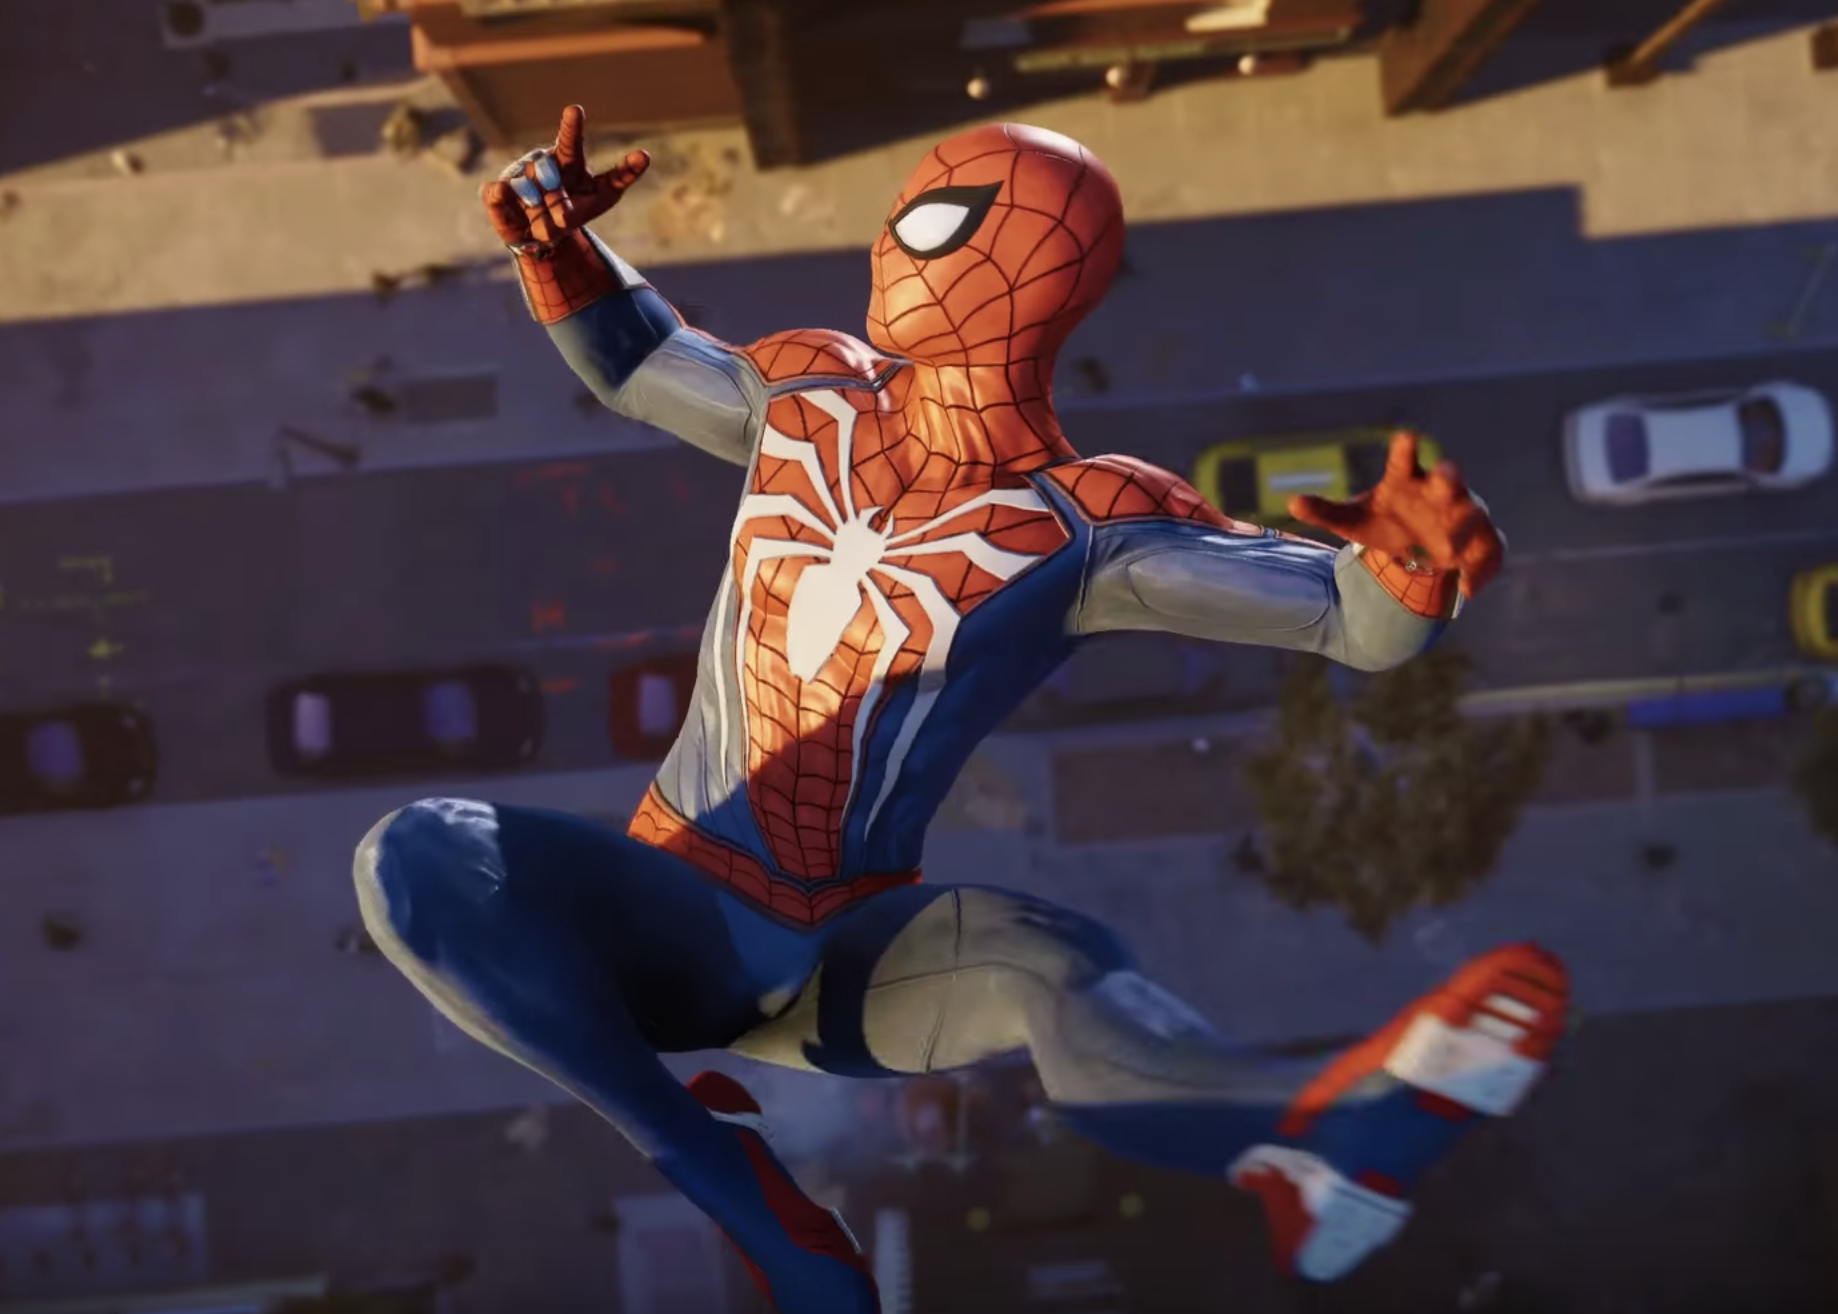 Spider man ps4. Человек паук игра на пс4. Marvel человек-паук (ps4). Spider man 2018 ps4. Паук 2 на пс 4